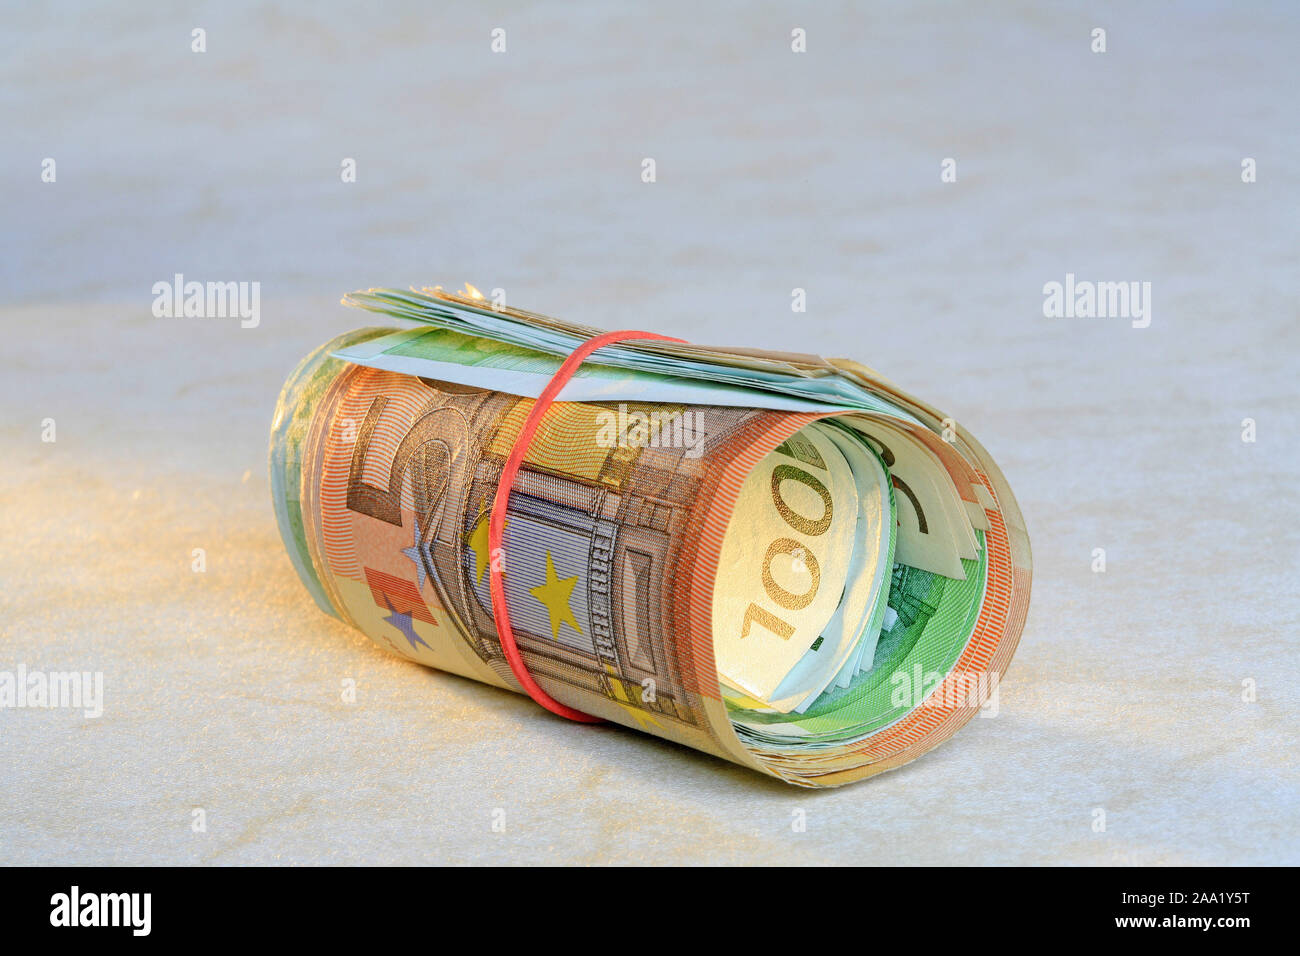 Zusammengerollte Euro Geldscheine mit einem Gummiring / Rolled Euro bank notes with a rubber ring Stock Photo